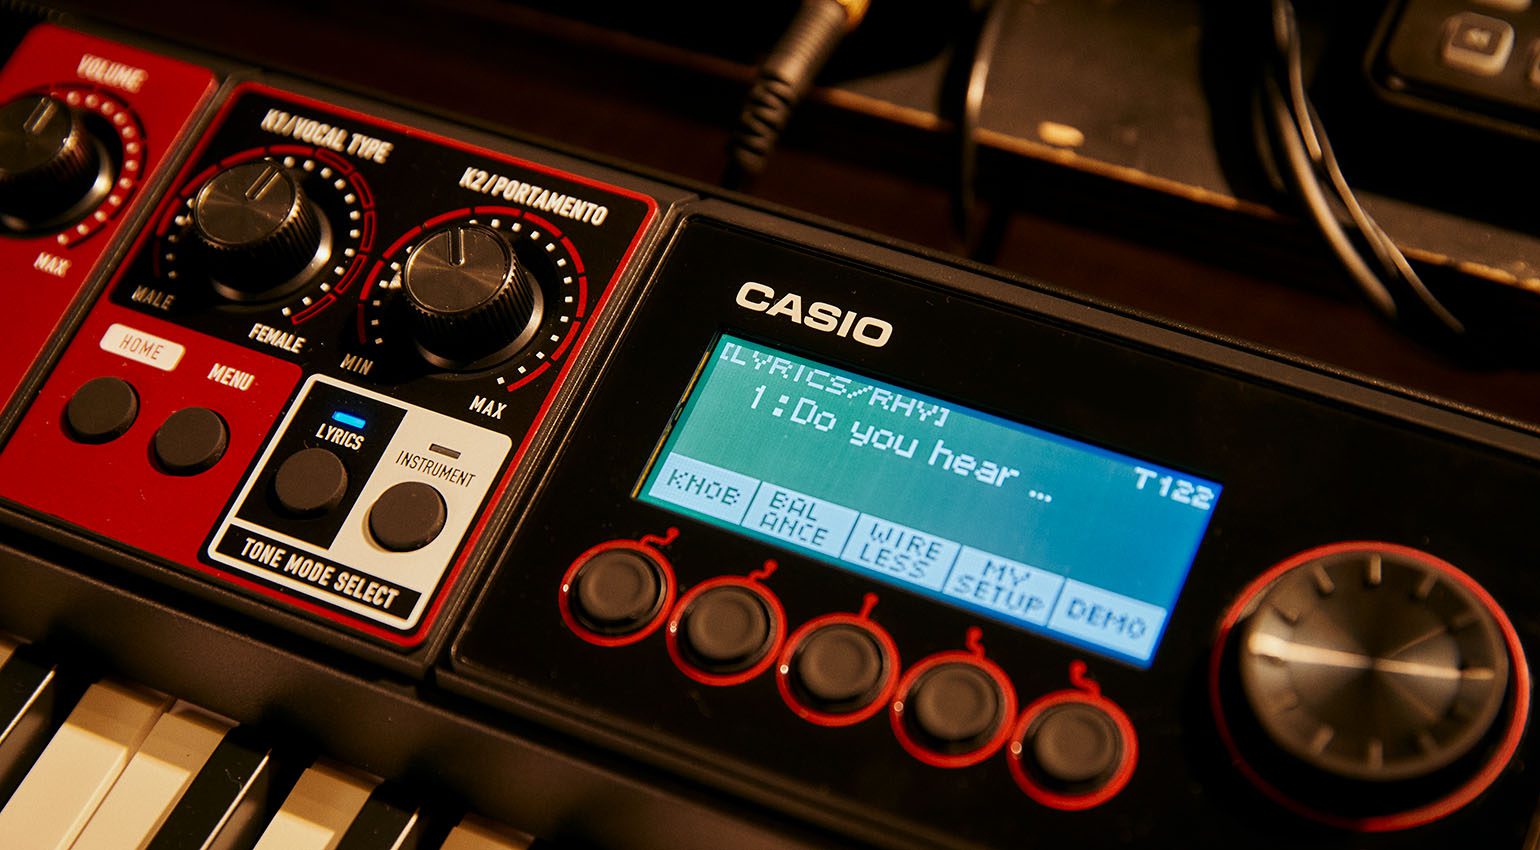 Casio выпустили клавиатуру с вокальным синтезатором, которая может «спеть всё, что вы напишете»